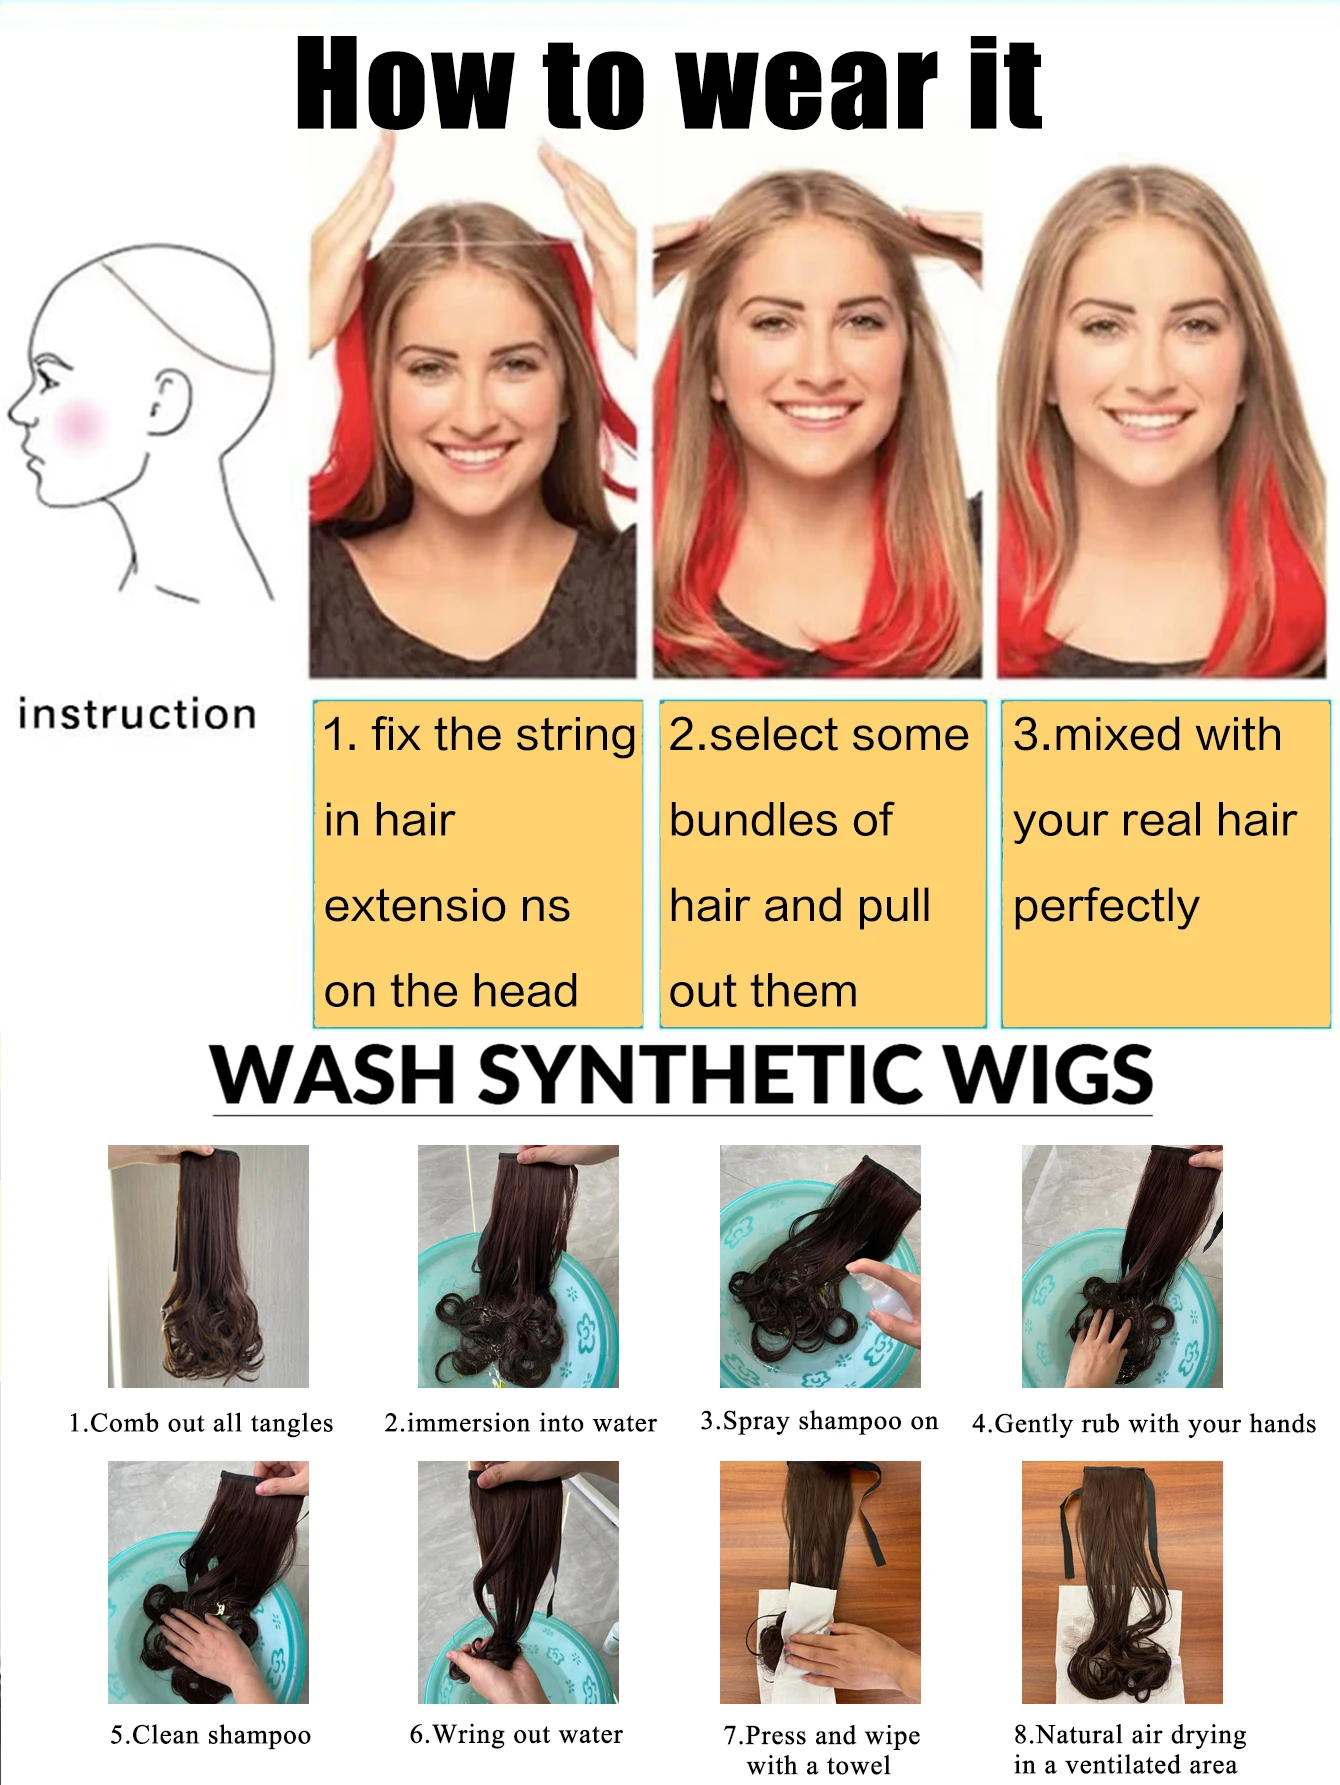 وصلات شعر اصطناعية غير مرئية للنساء ، قطع شعر بخيط سمكة ، بدون مقاطع ، شعر مزيف ، 24"